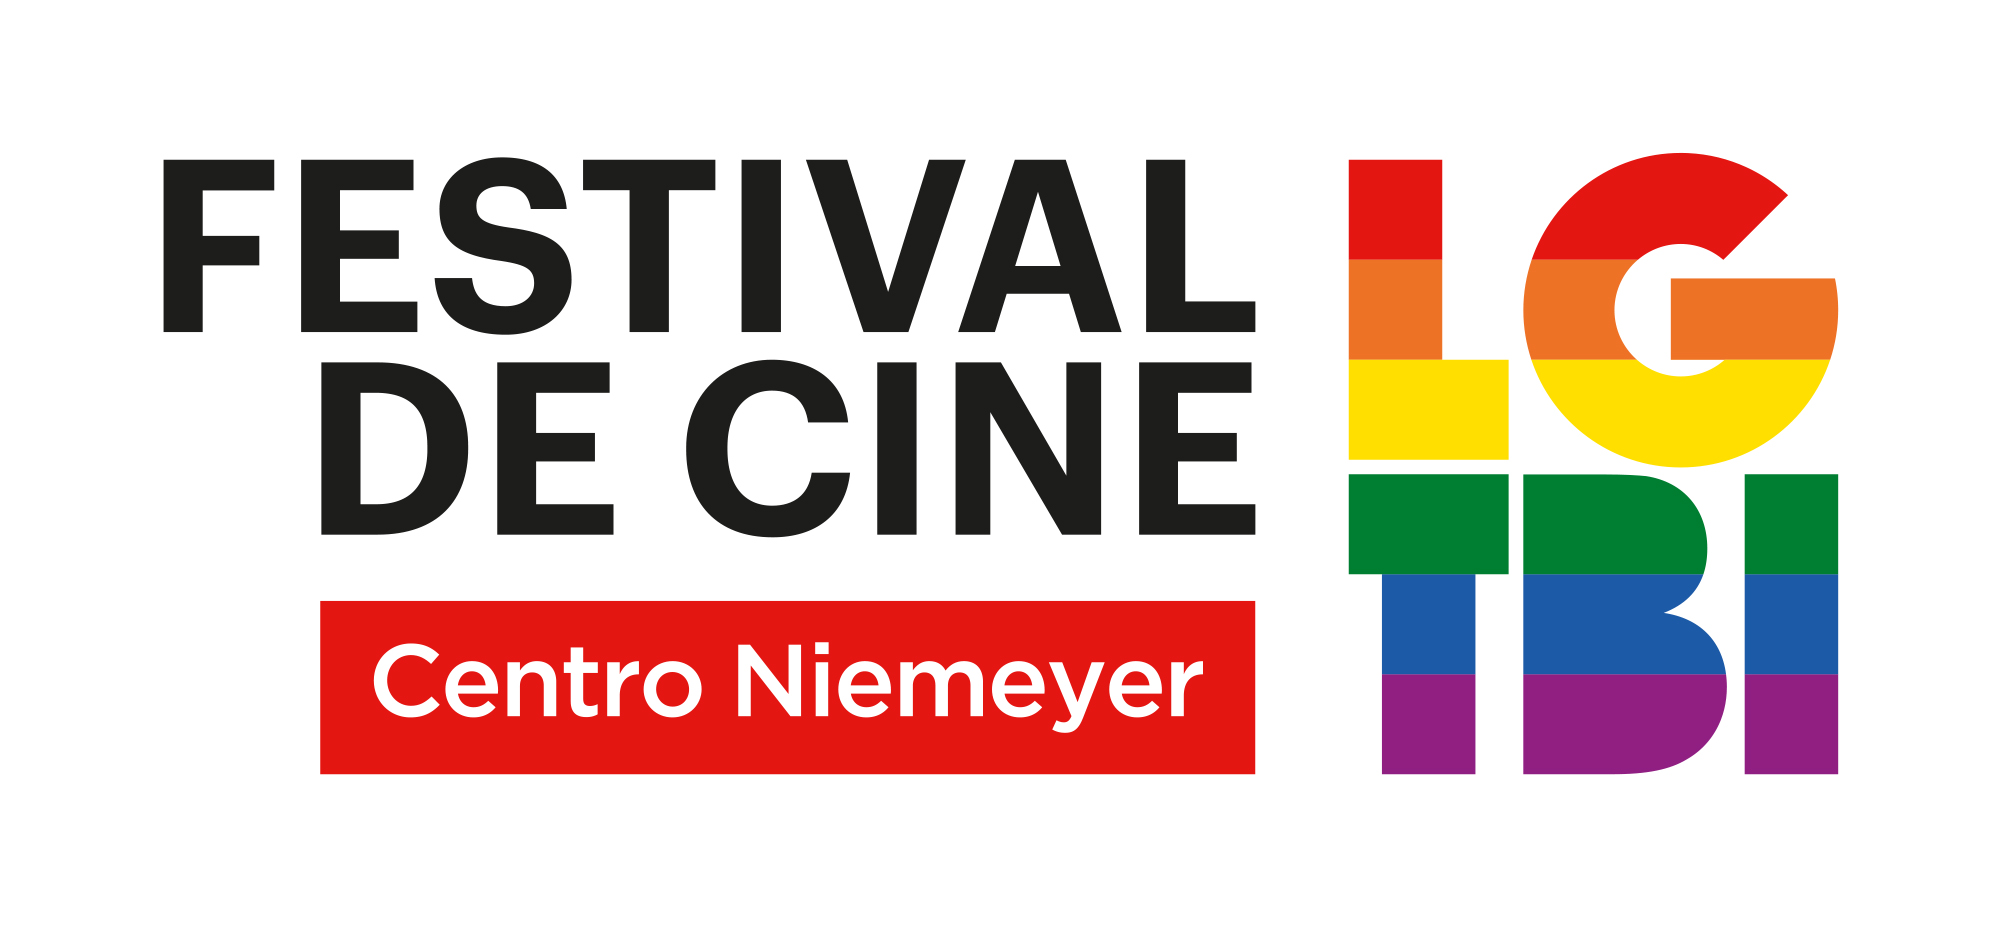 La octava edición del Festival de Cine LGTBI del Centro Niemeyer renueva su imagen